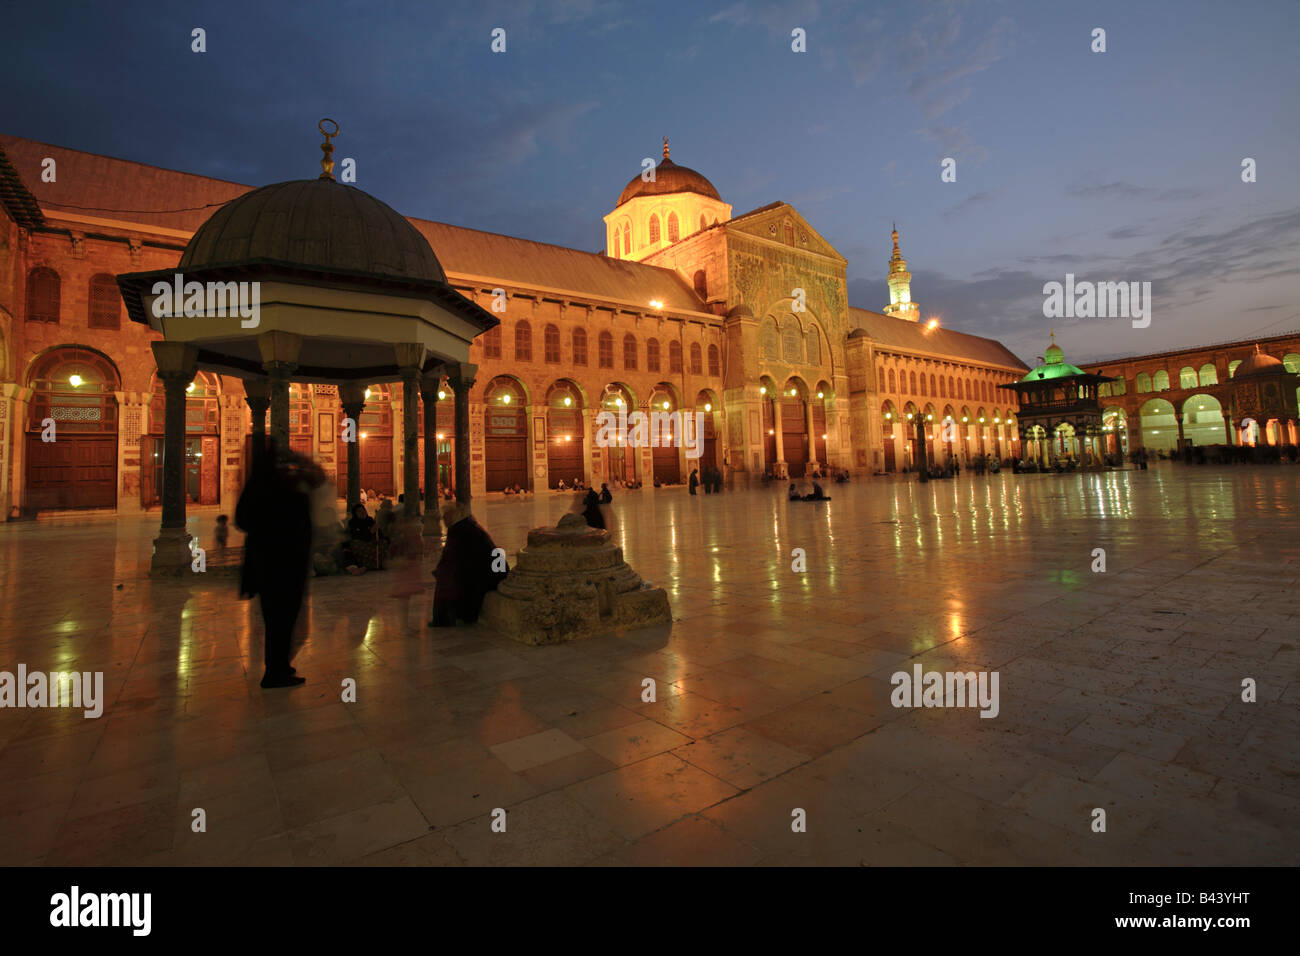 Umayyad Mosque at night, Damascus, Syria Stock Photo